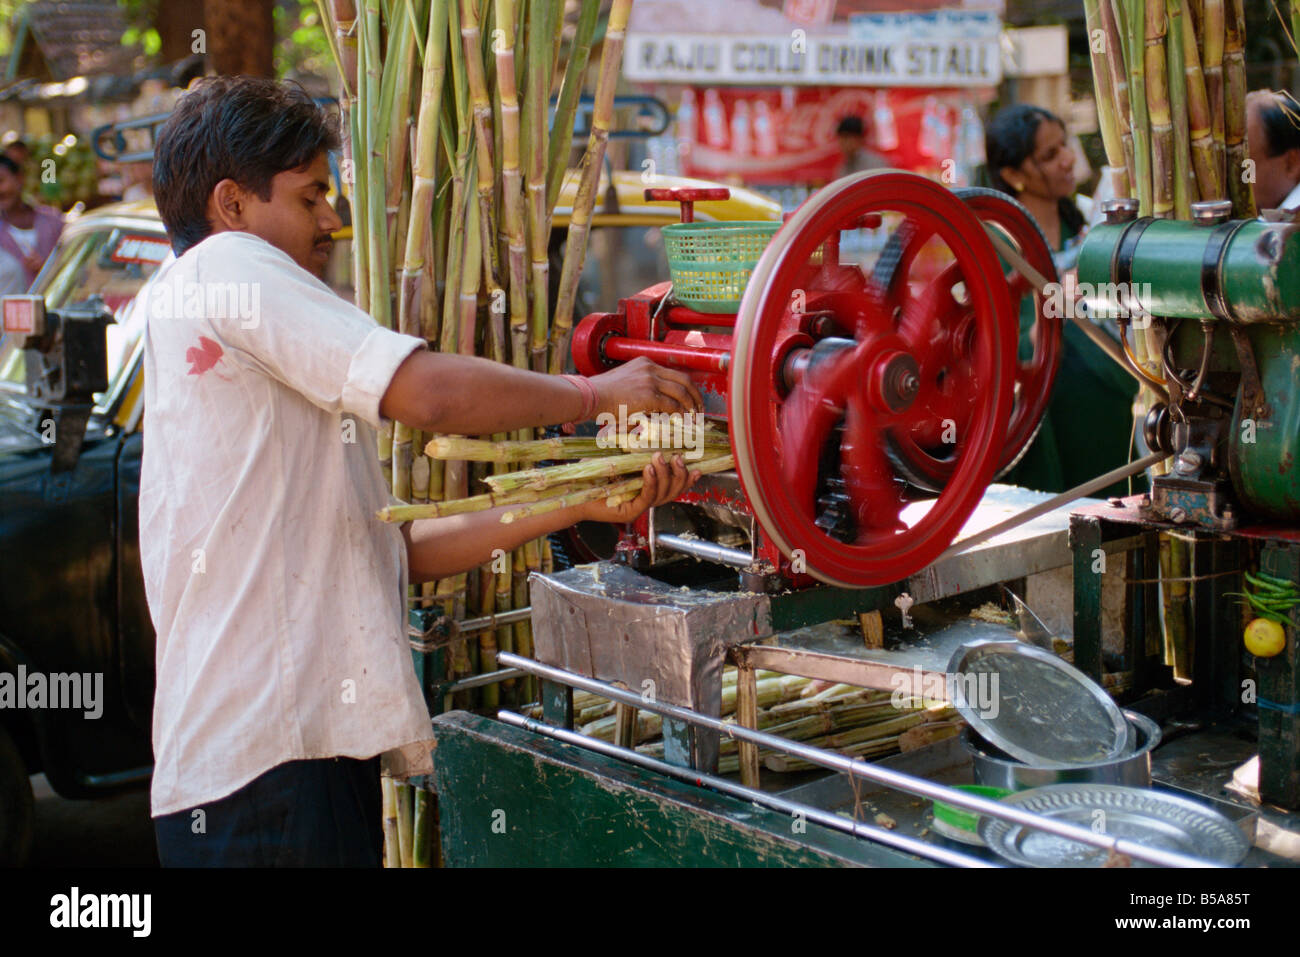 Sugar cane juicing machine Mumbai Bombay India Asia Stock Photo - Alamy